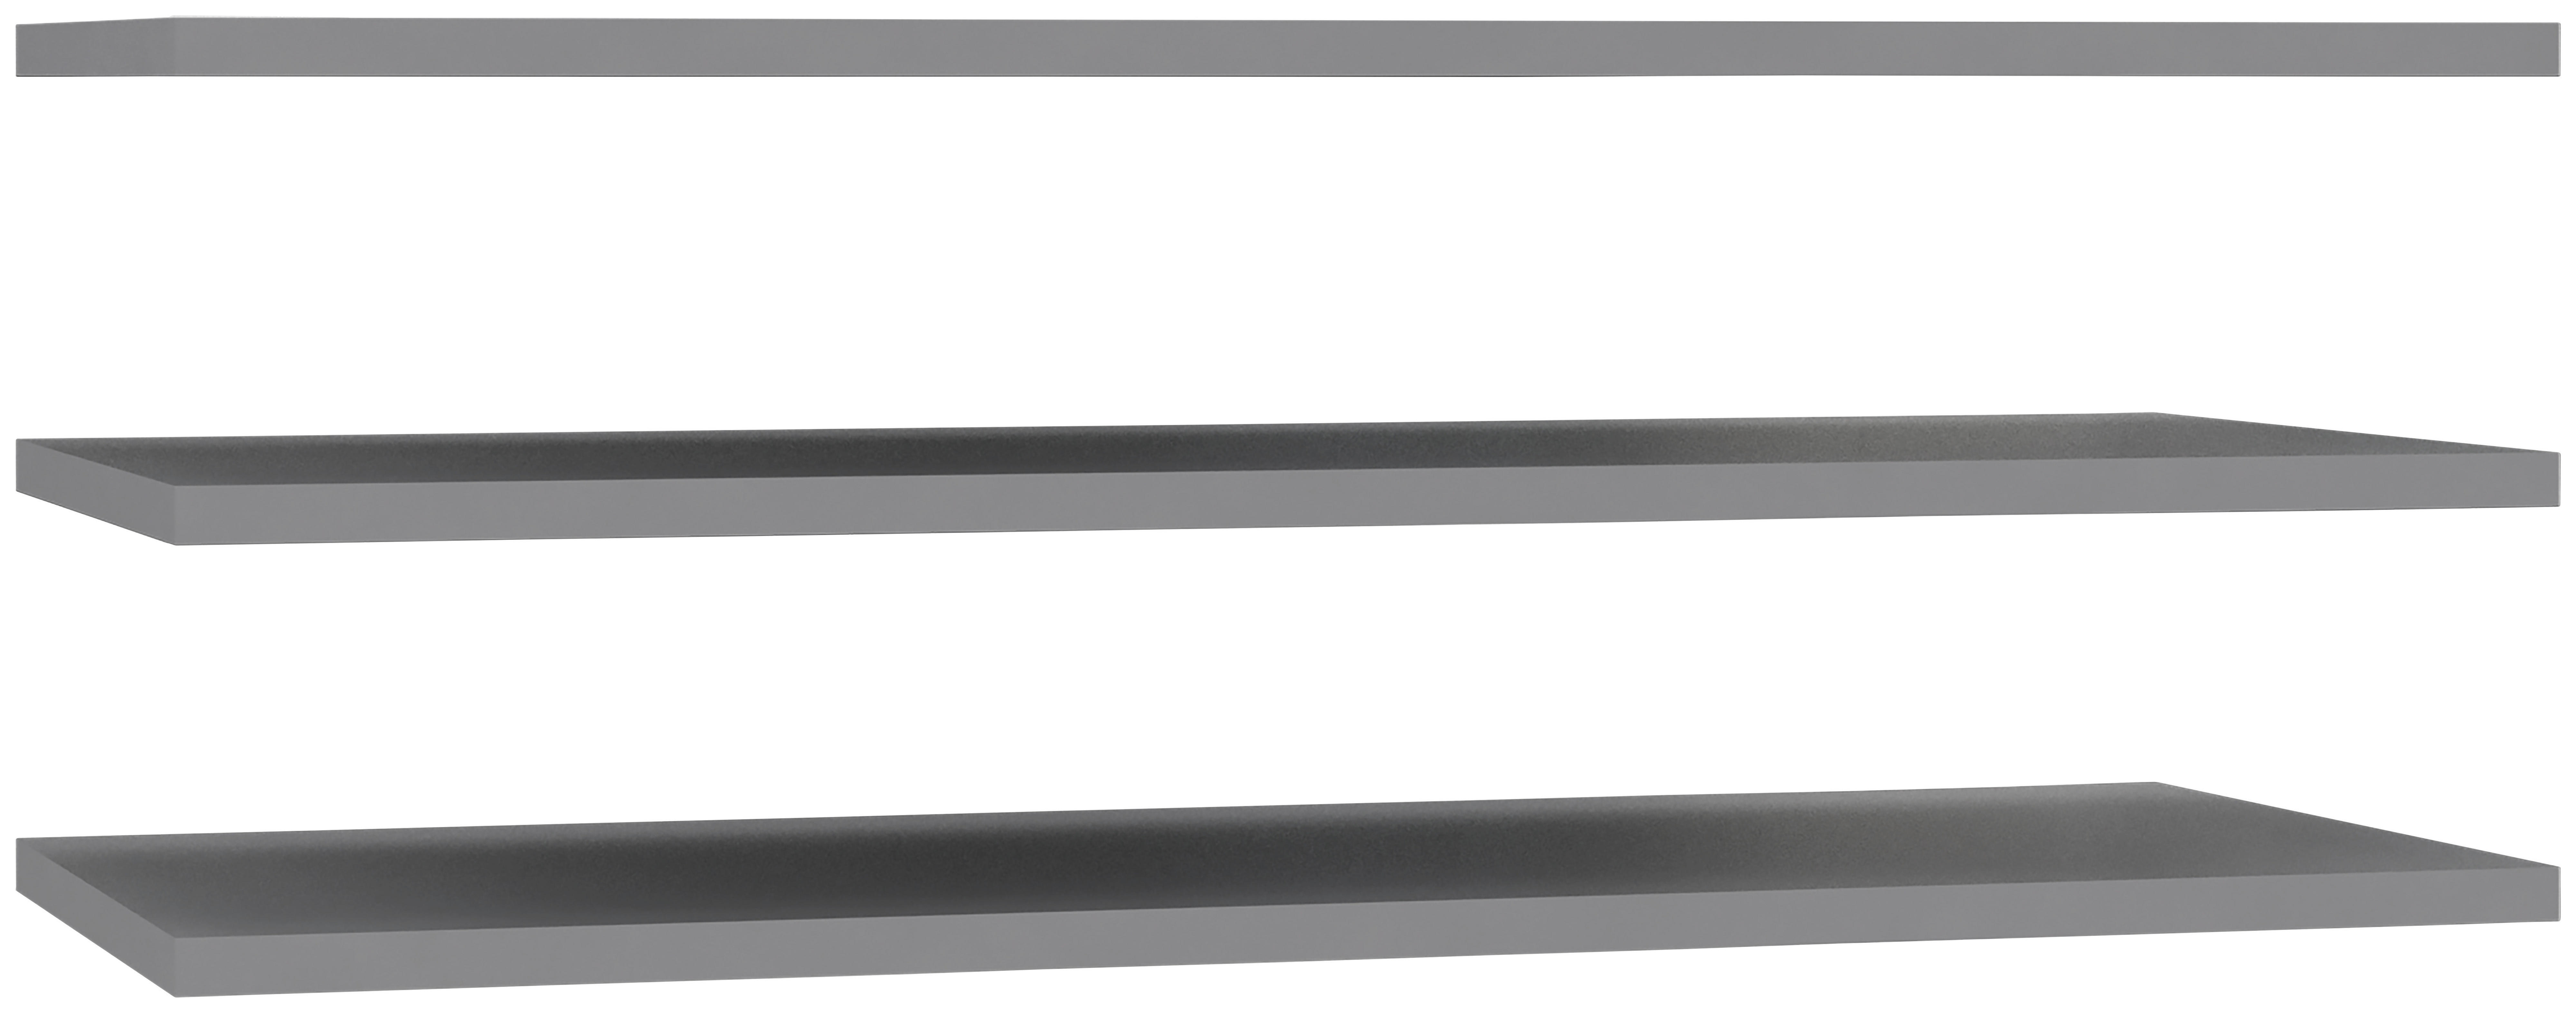 EINLEGEBODENSET 3-teilig Grau  - Grau (97,8/42/1,5cm) - Carryhome